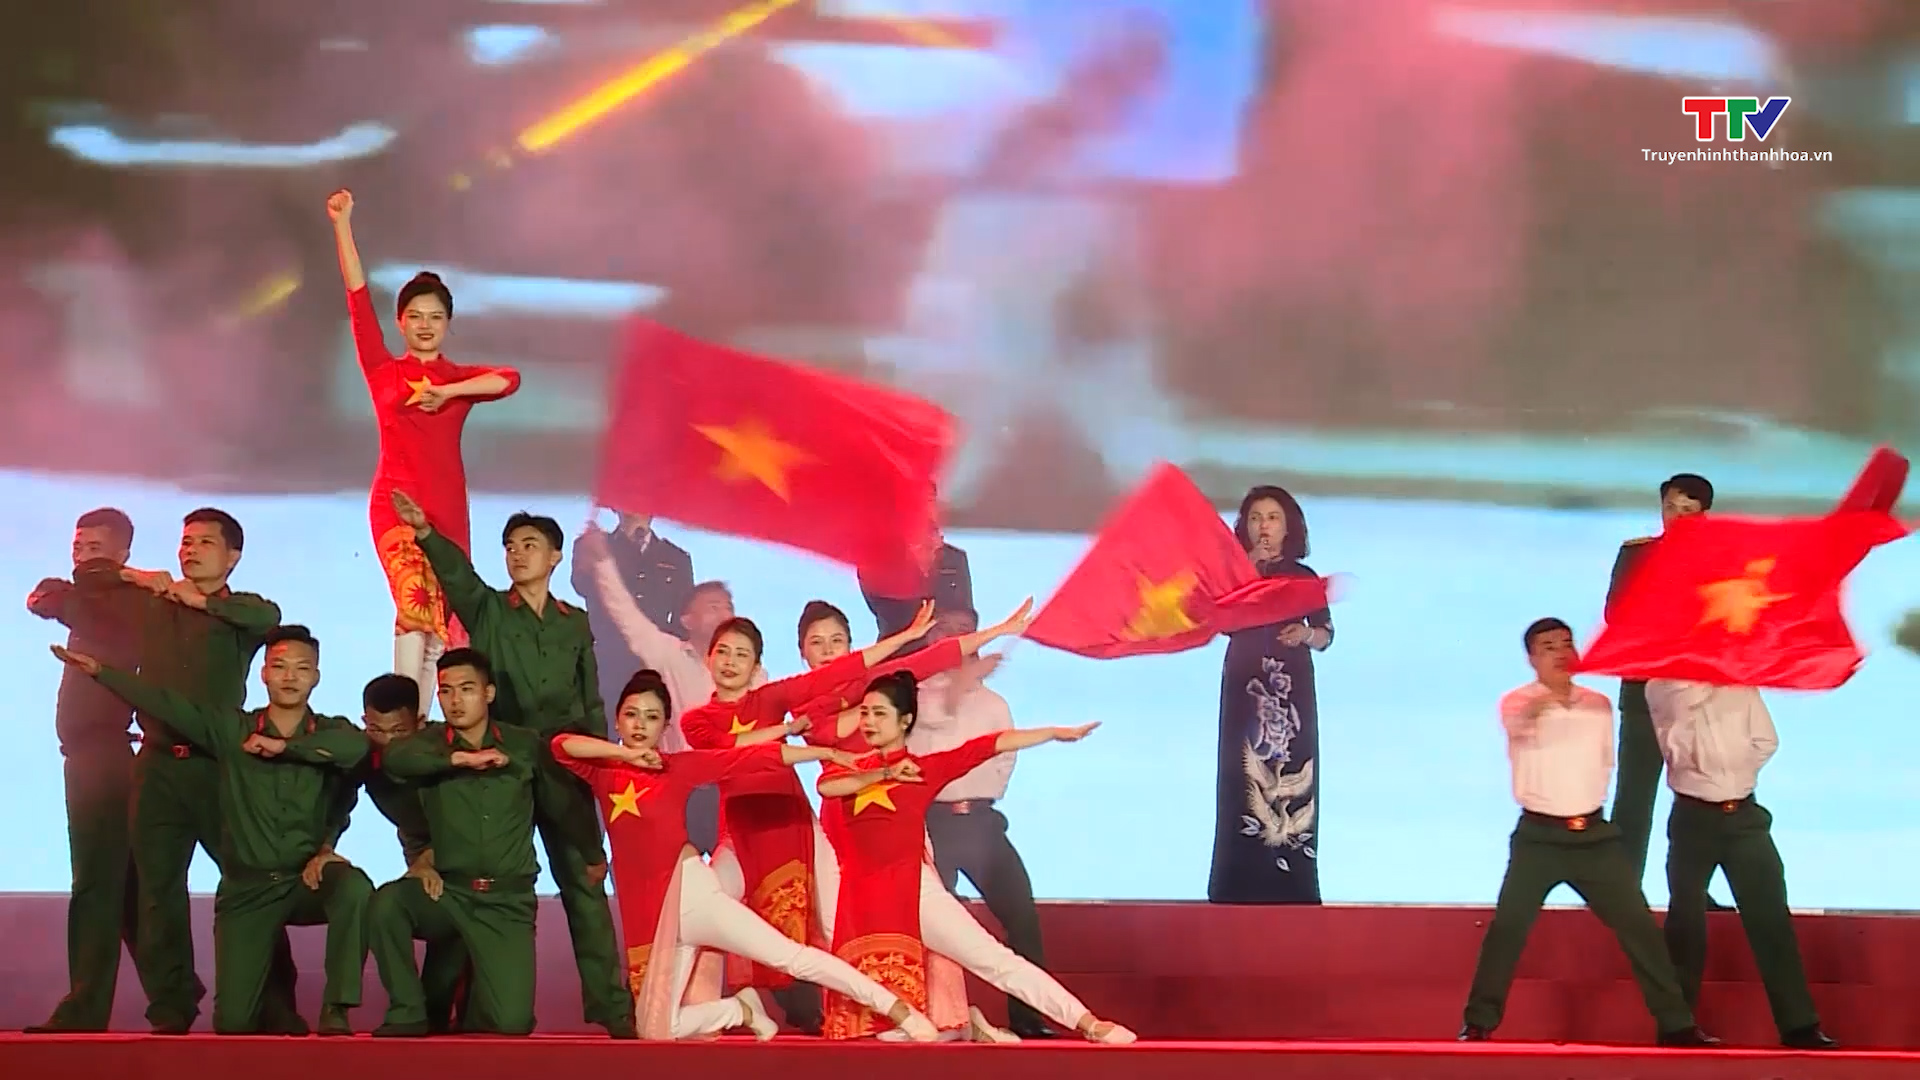 Thành phố Thanh Hóa tổ chức chương trình văn nghệ chào mừng 59 năm Hàm Rồng chiến thắng- Ảnh 4.